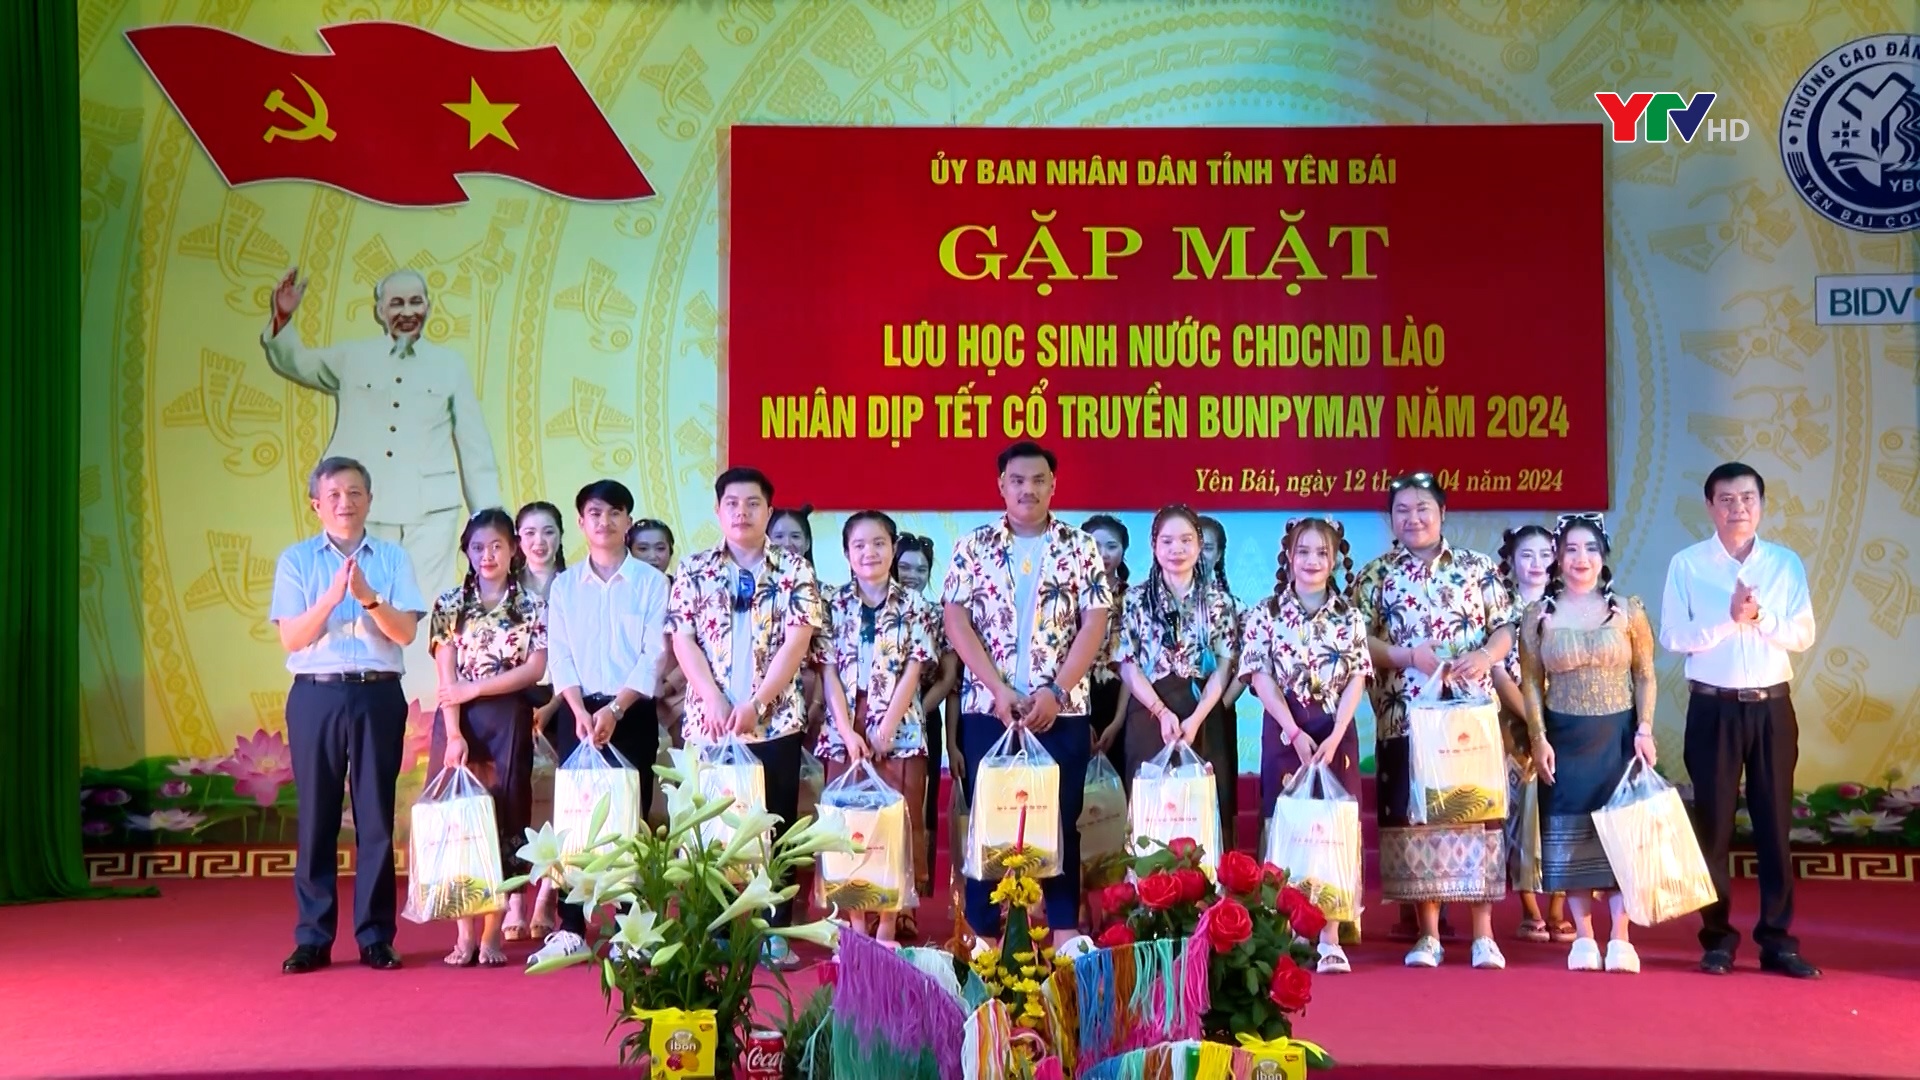 Yên Bái gặp mặt và tặng quà các lưu học sinh Lào nhân dịp Tết cổ truyền Bunpimay năm 2024